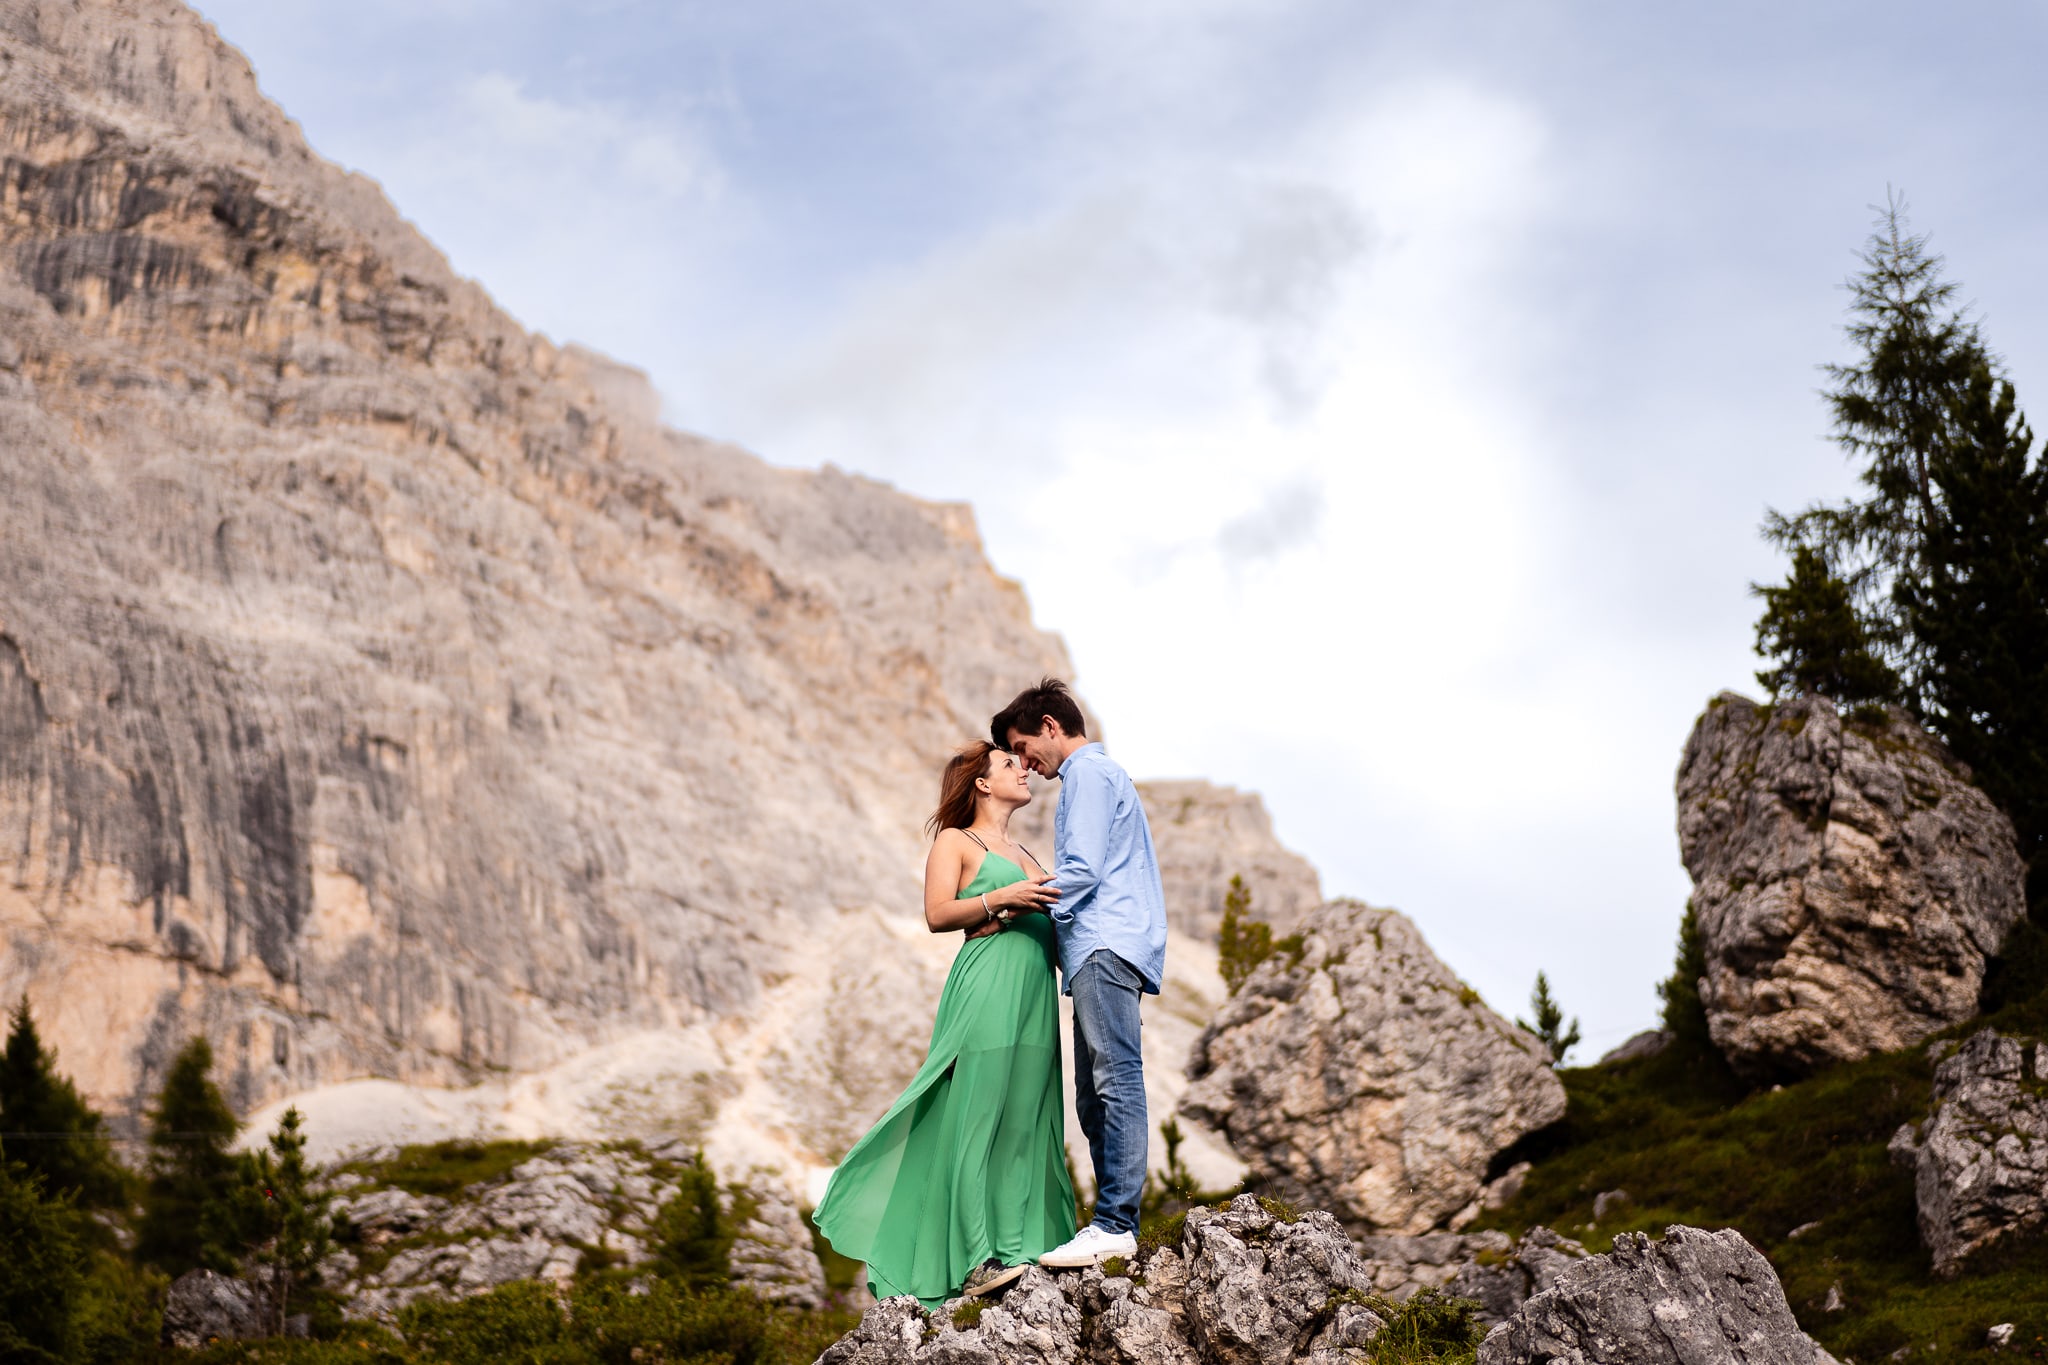 Alessandra Raffaele Prematrimoniale Dolomiti Alta Badia Rifugio Lagazuoi coppia abbracciata sulla roccia sfondo montagna